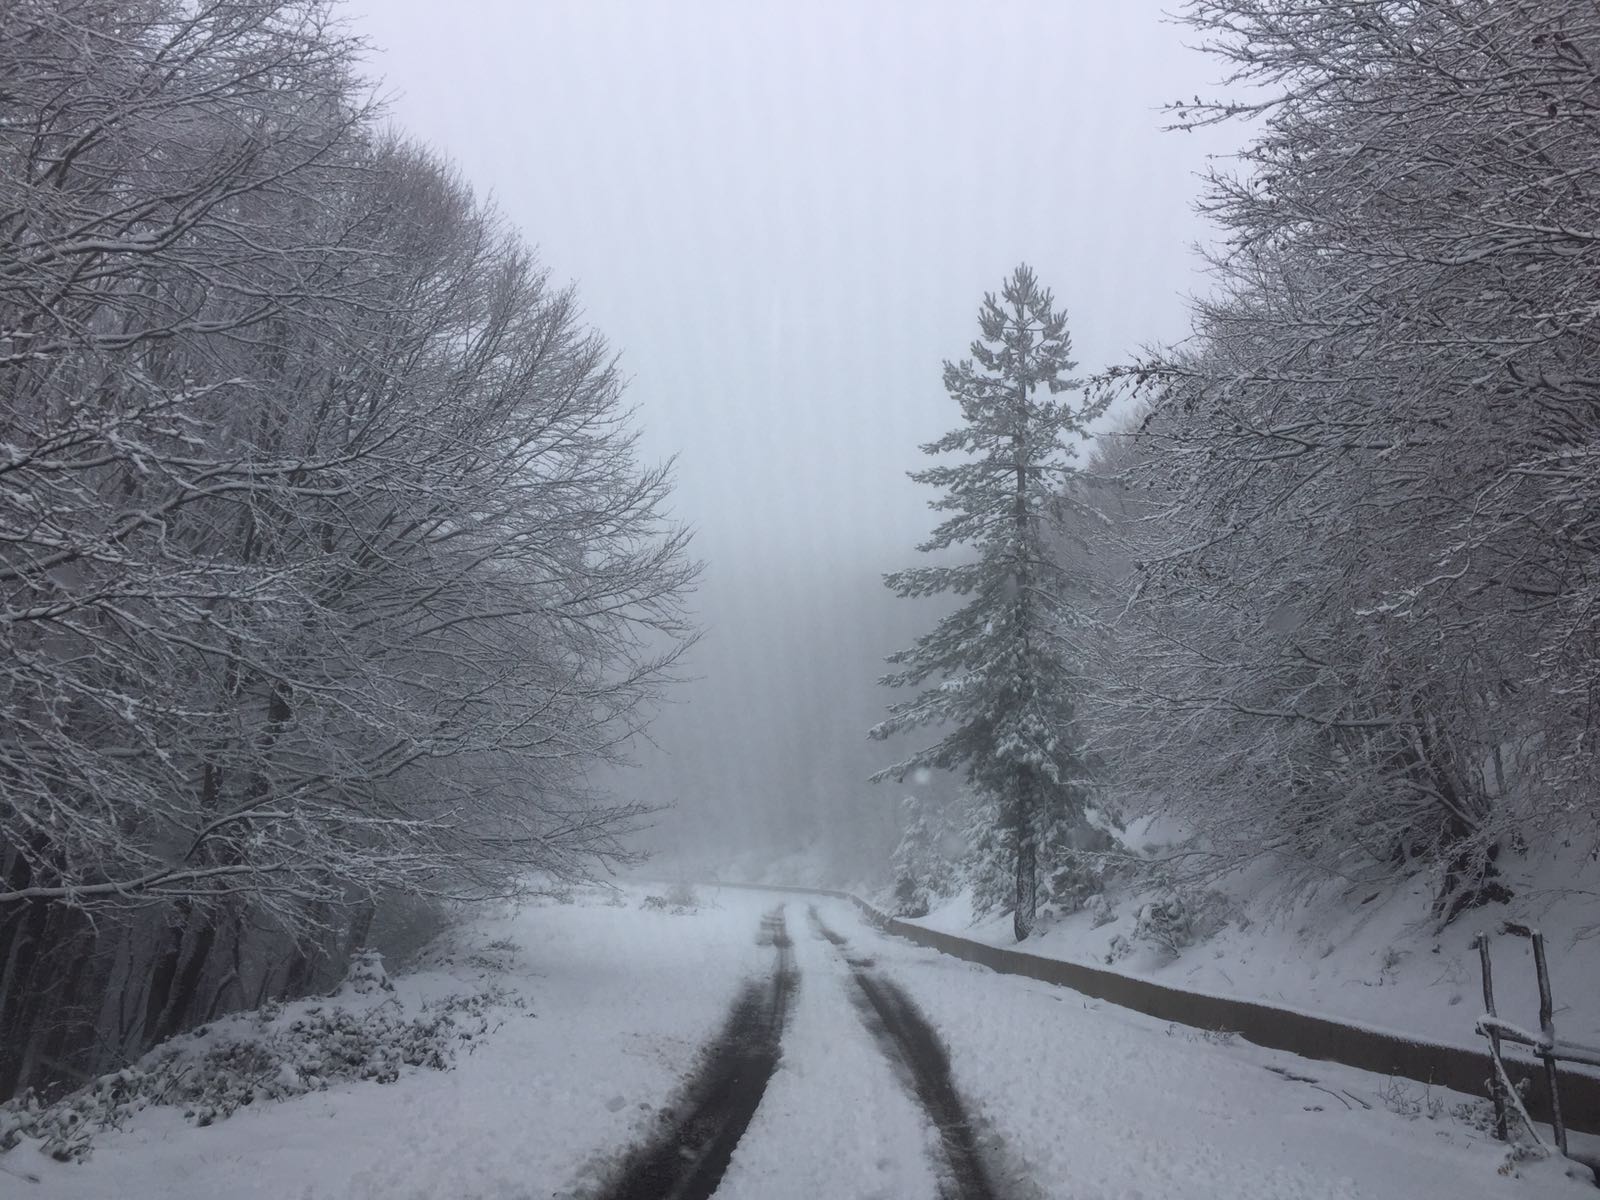 Vette Silane in veste invernali: le foto della prima vera nevicata!